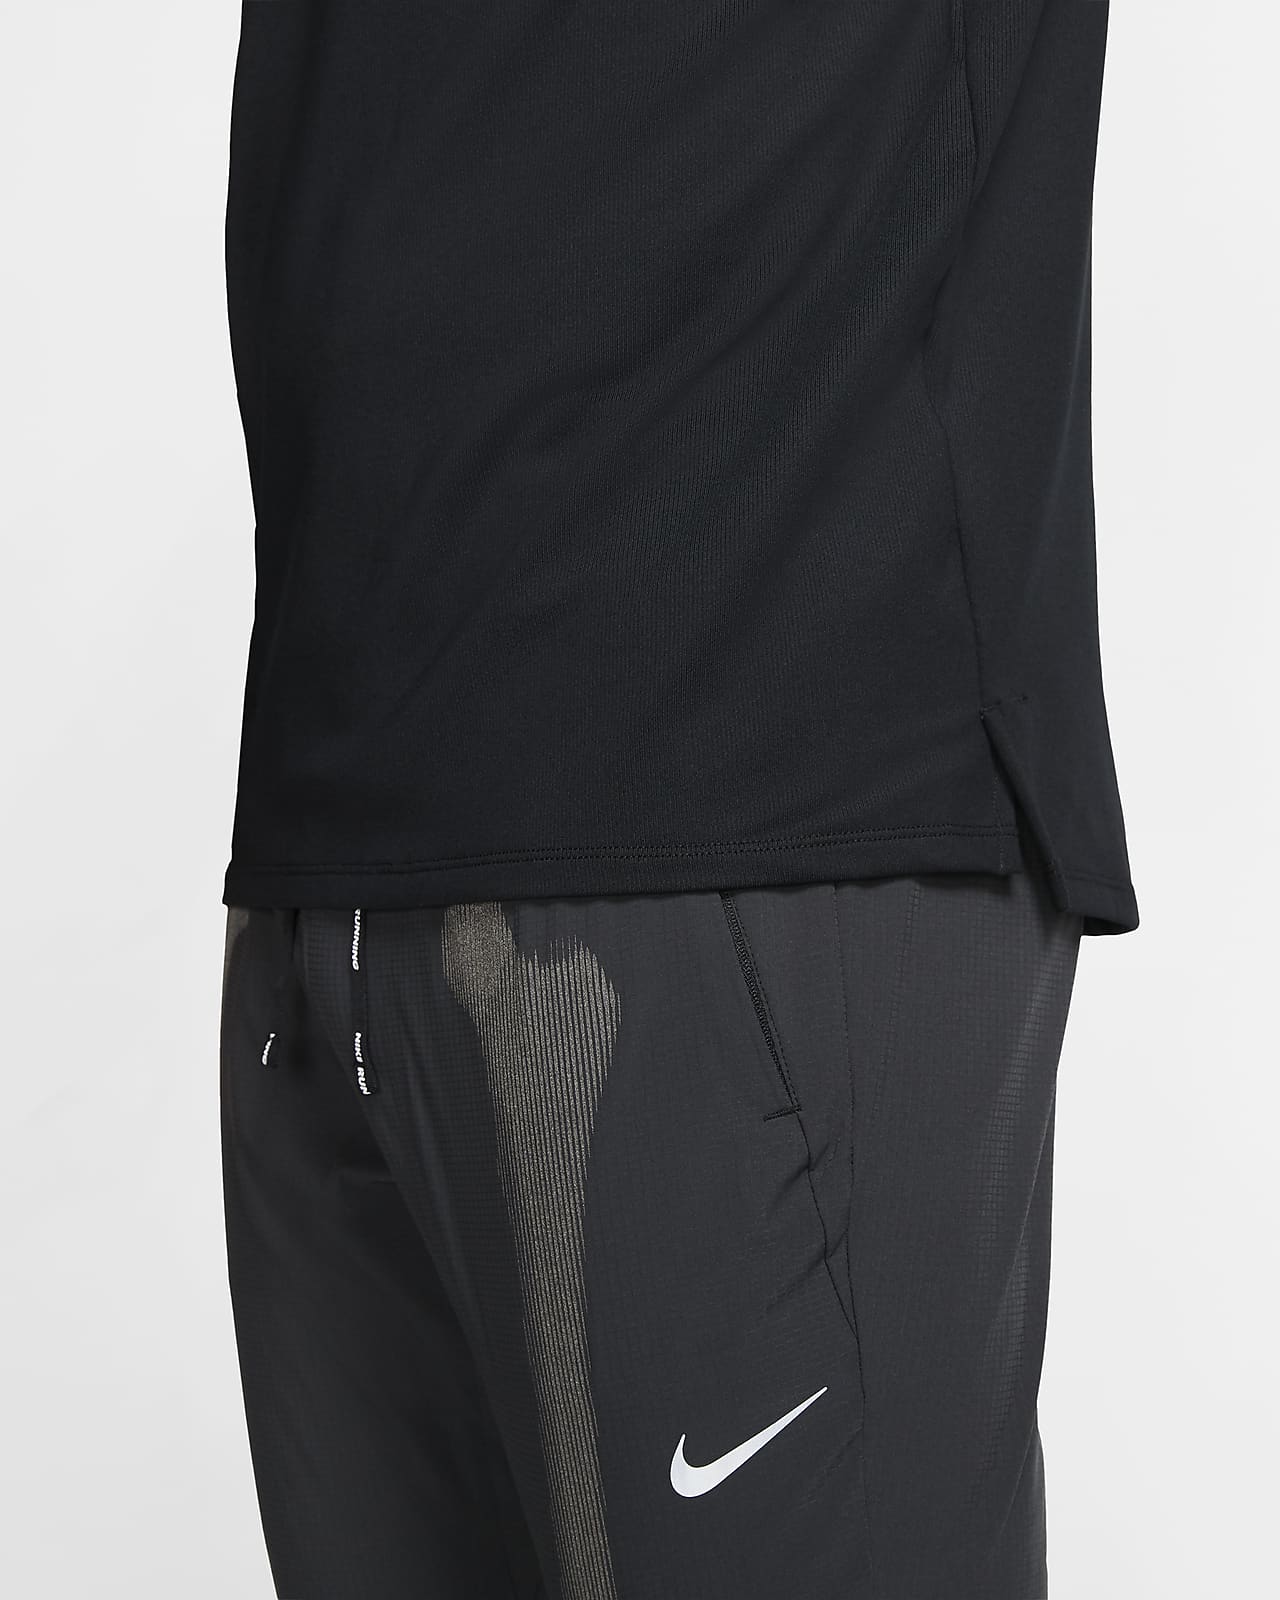 Nike Men's Skeleton Pants